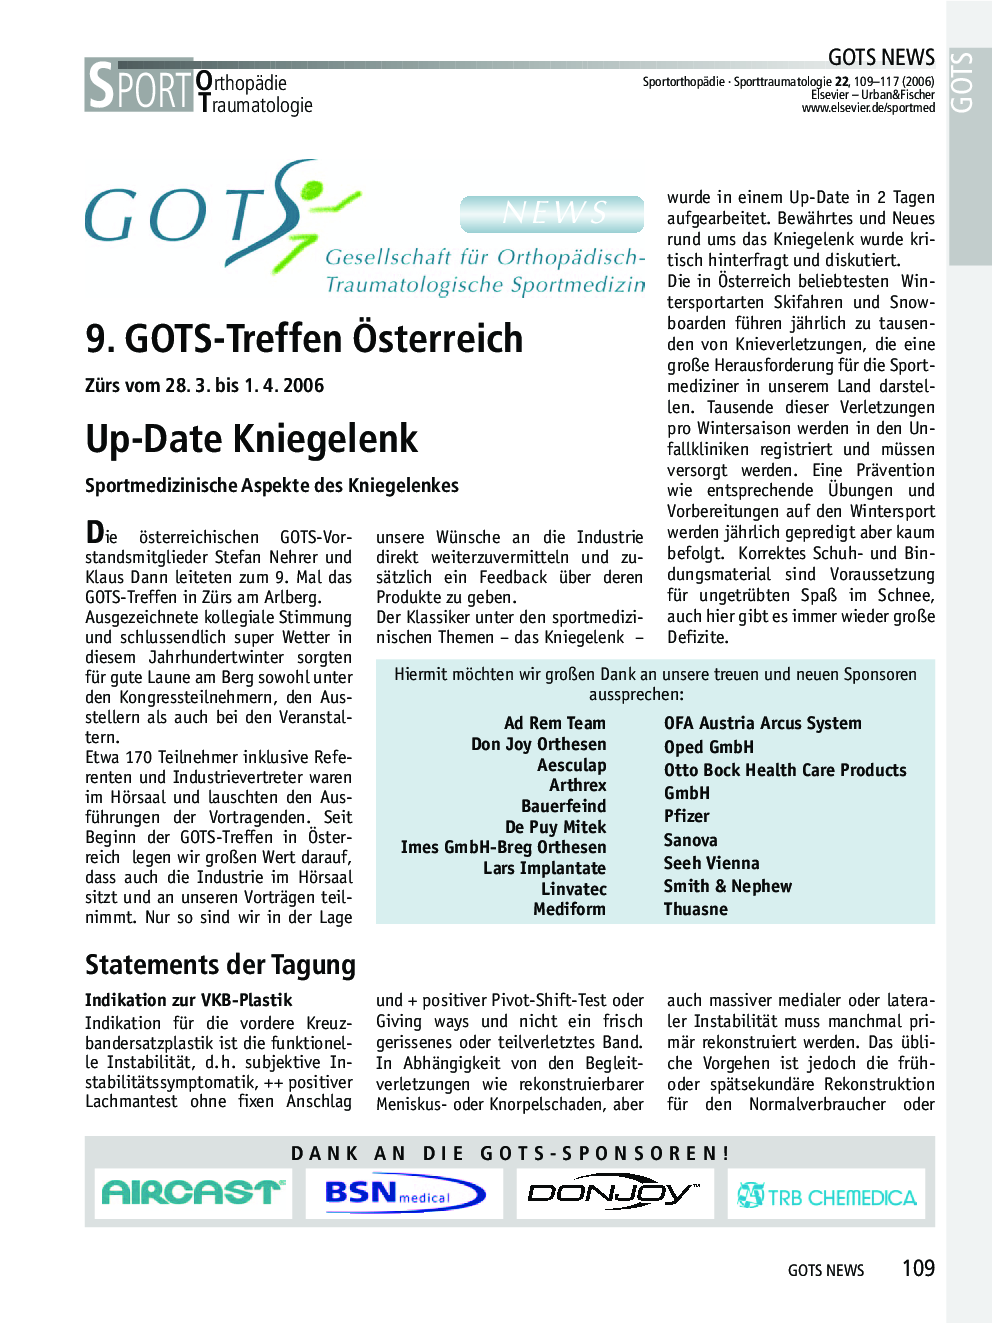 GOTS-News